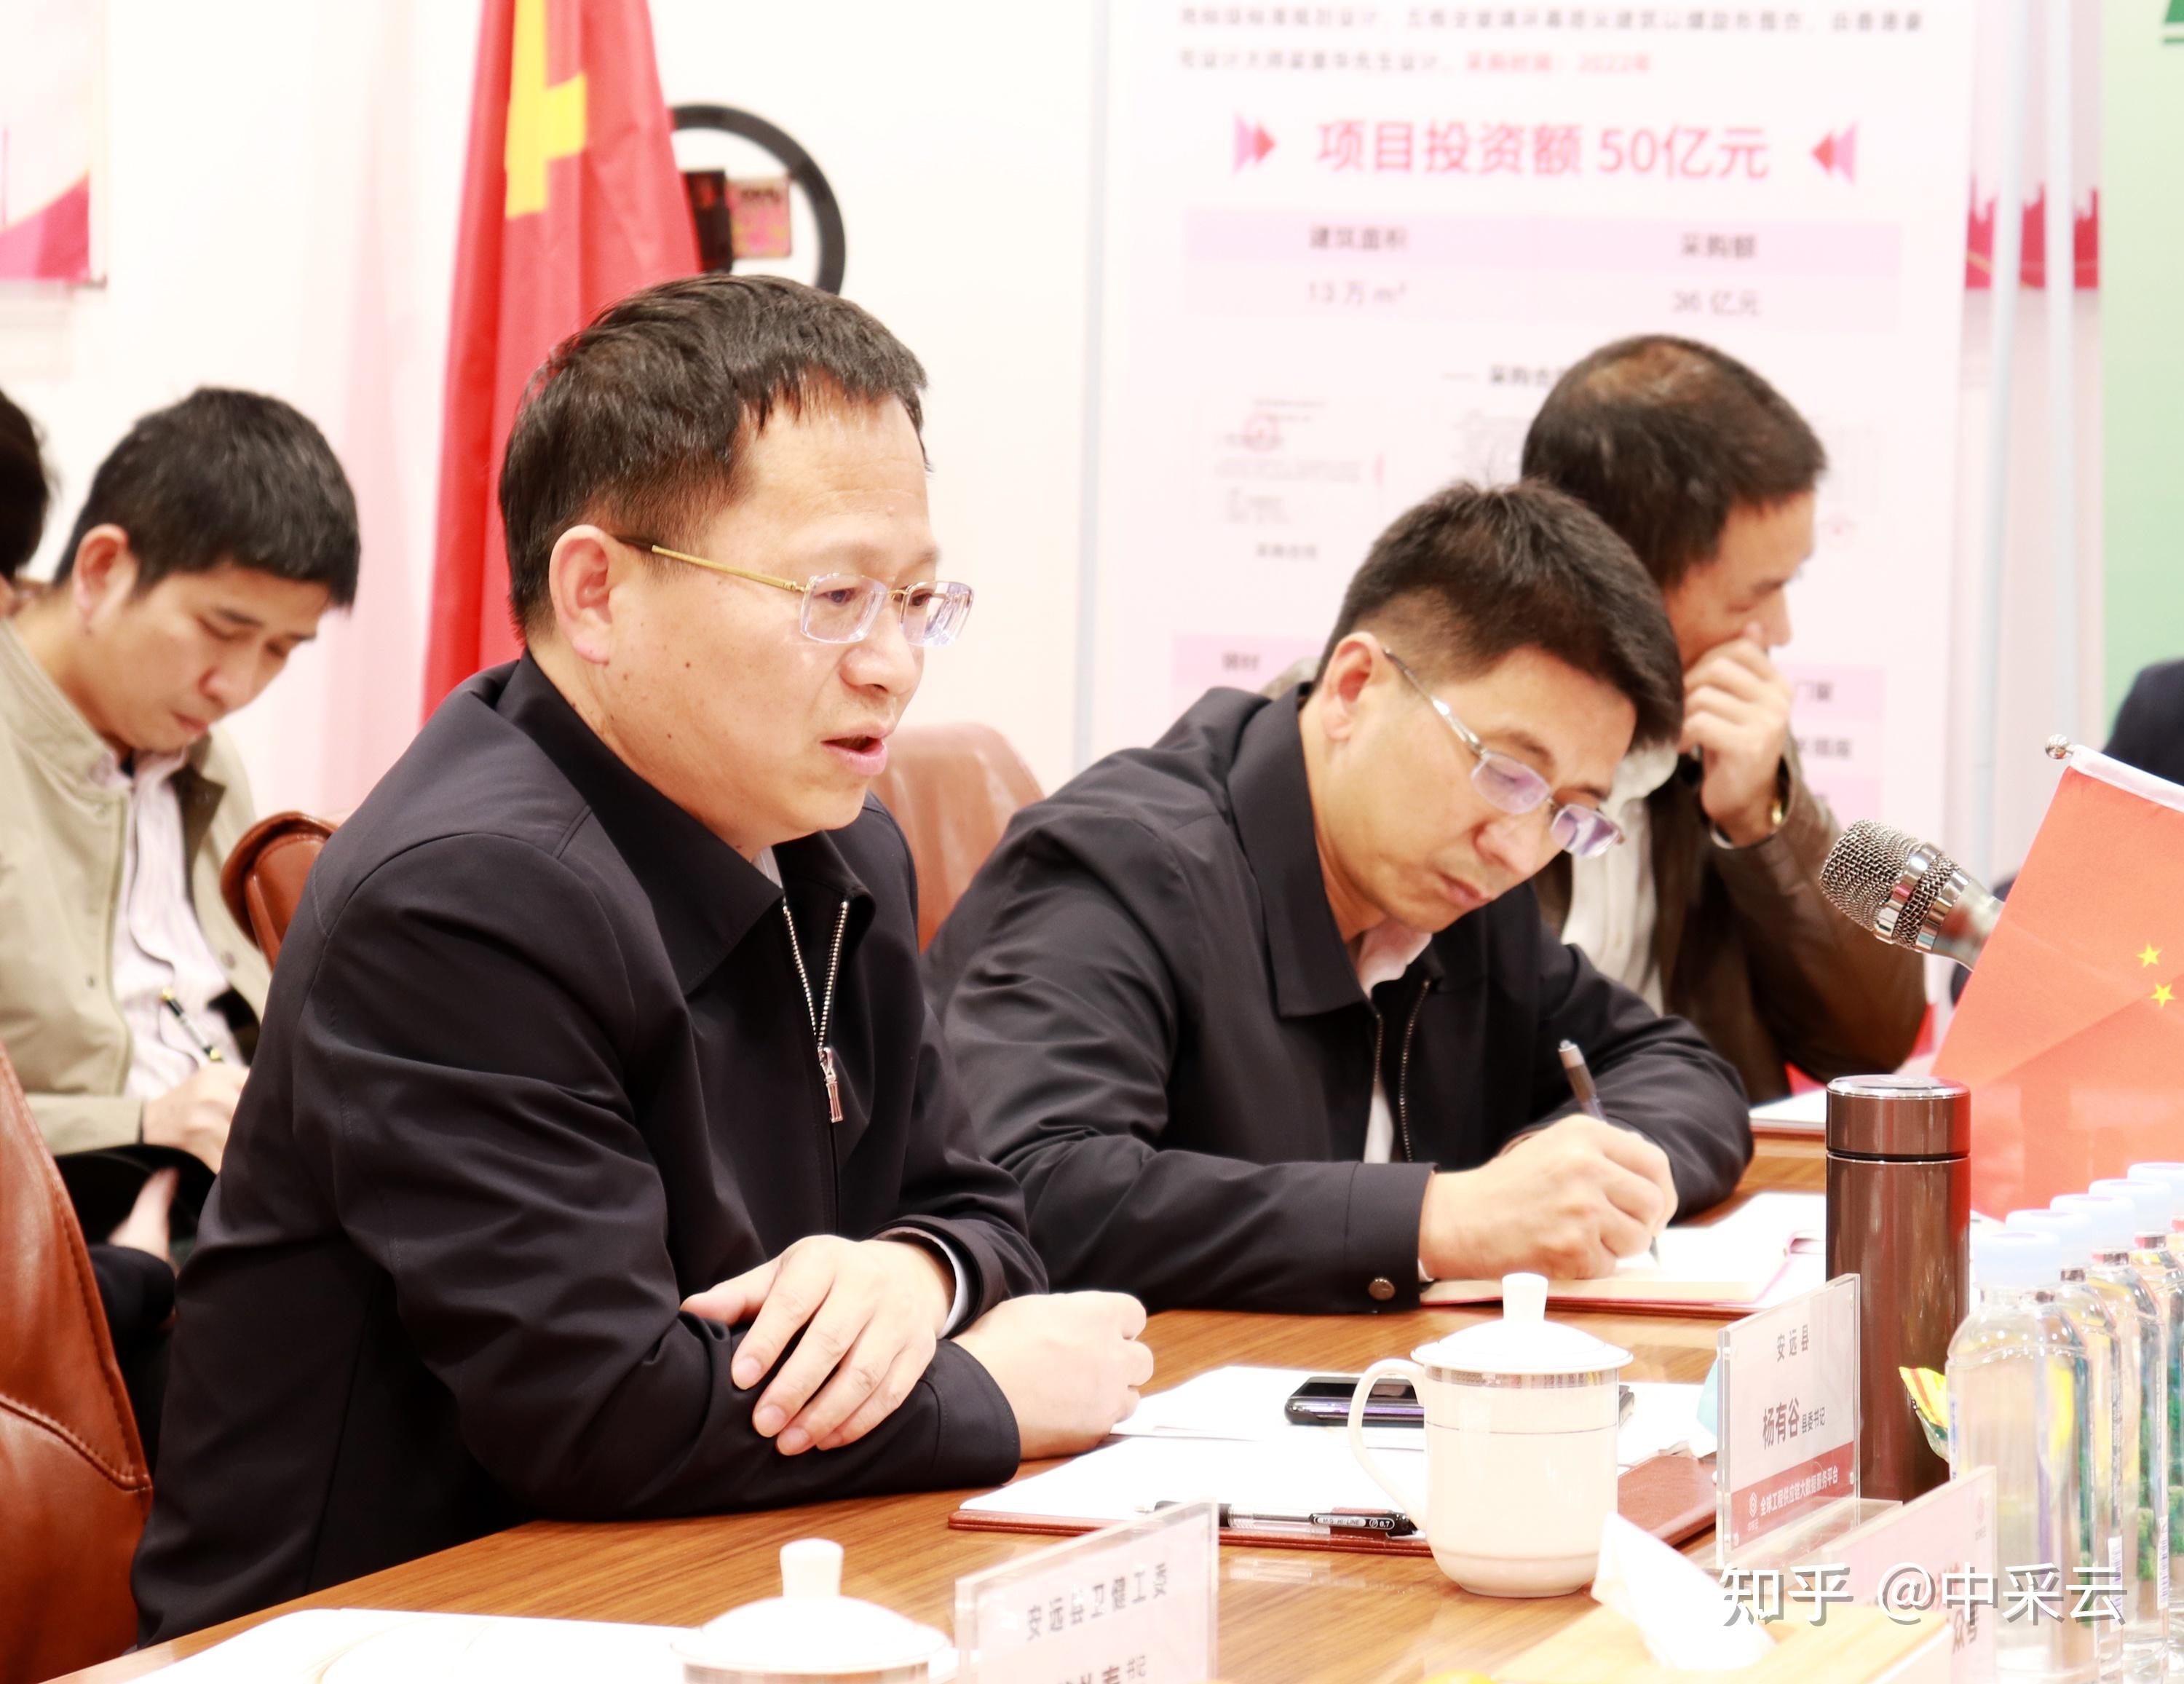 安远县县委书记杨有谷(左一)带领安远县招商团到访会议现场会议现场